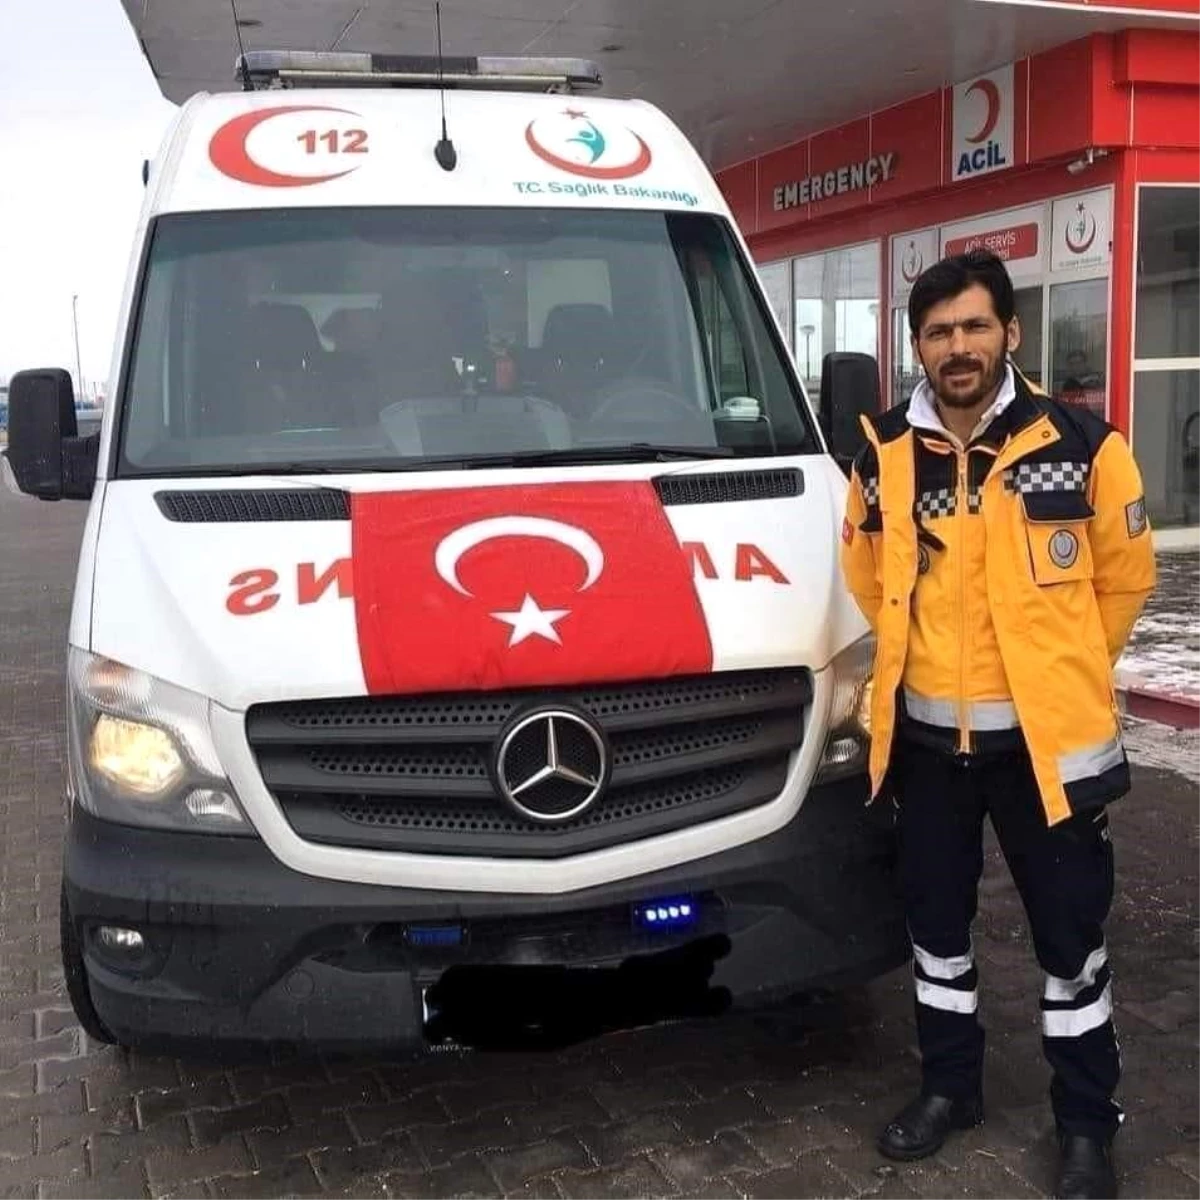 Konya’da motosiklet kazasında hayatını kaybeden sağlık çalışanı için cenaze töreni düzenlenecek